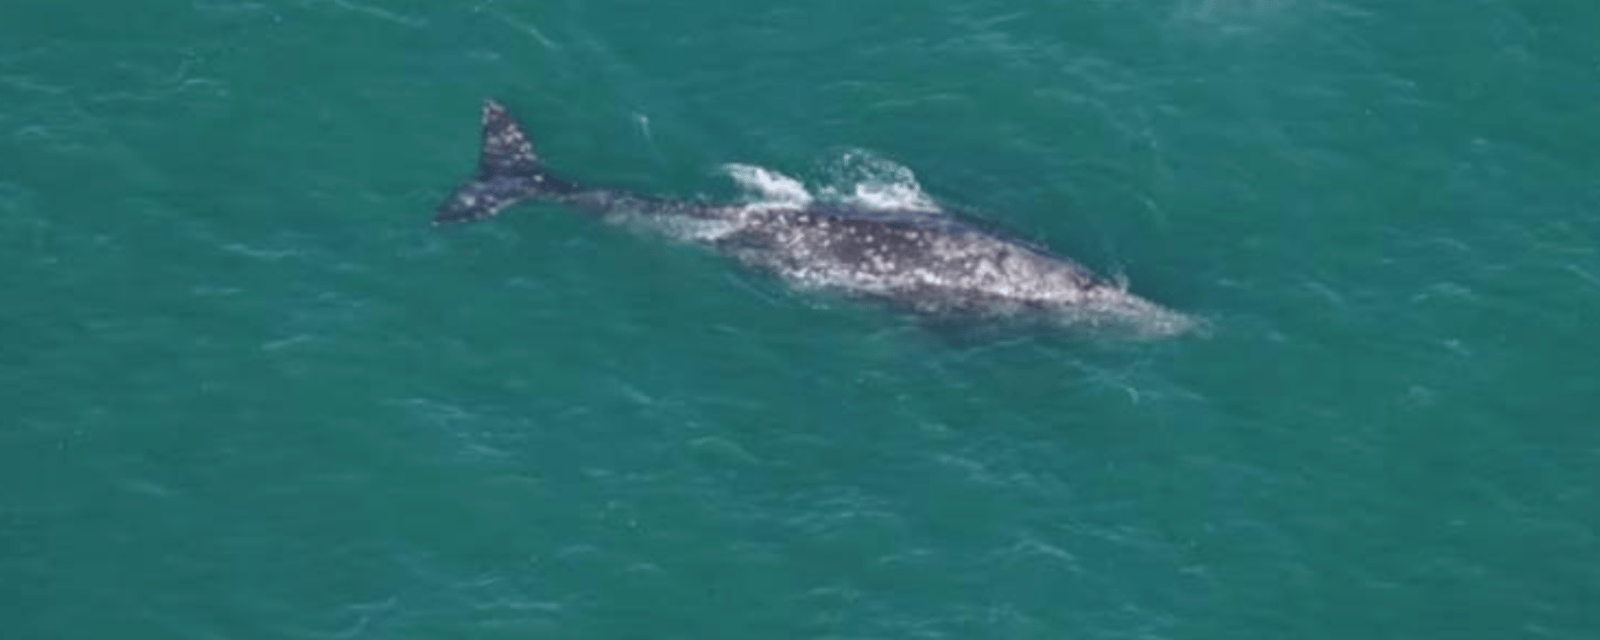 Des scientifiques observent une baleine qui «ne devrait plus exister».